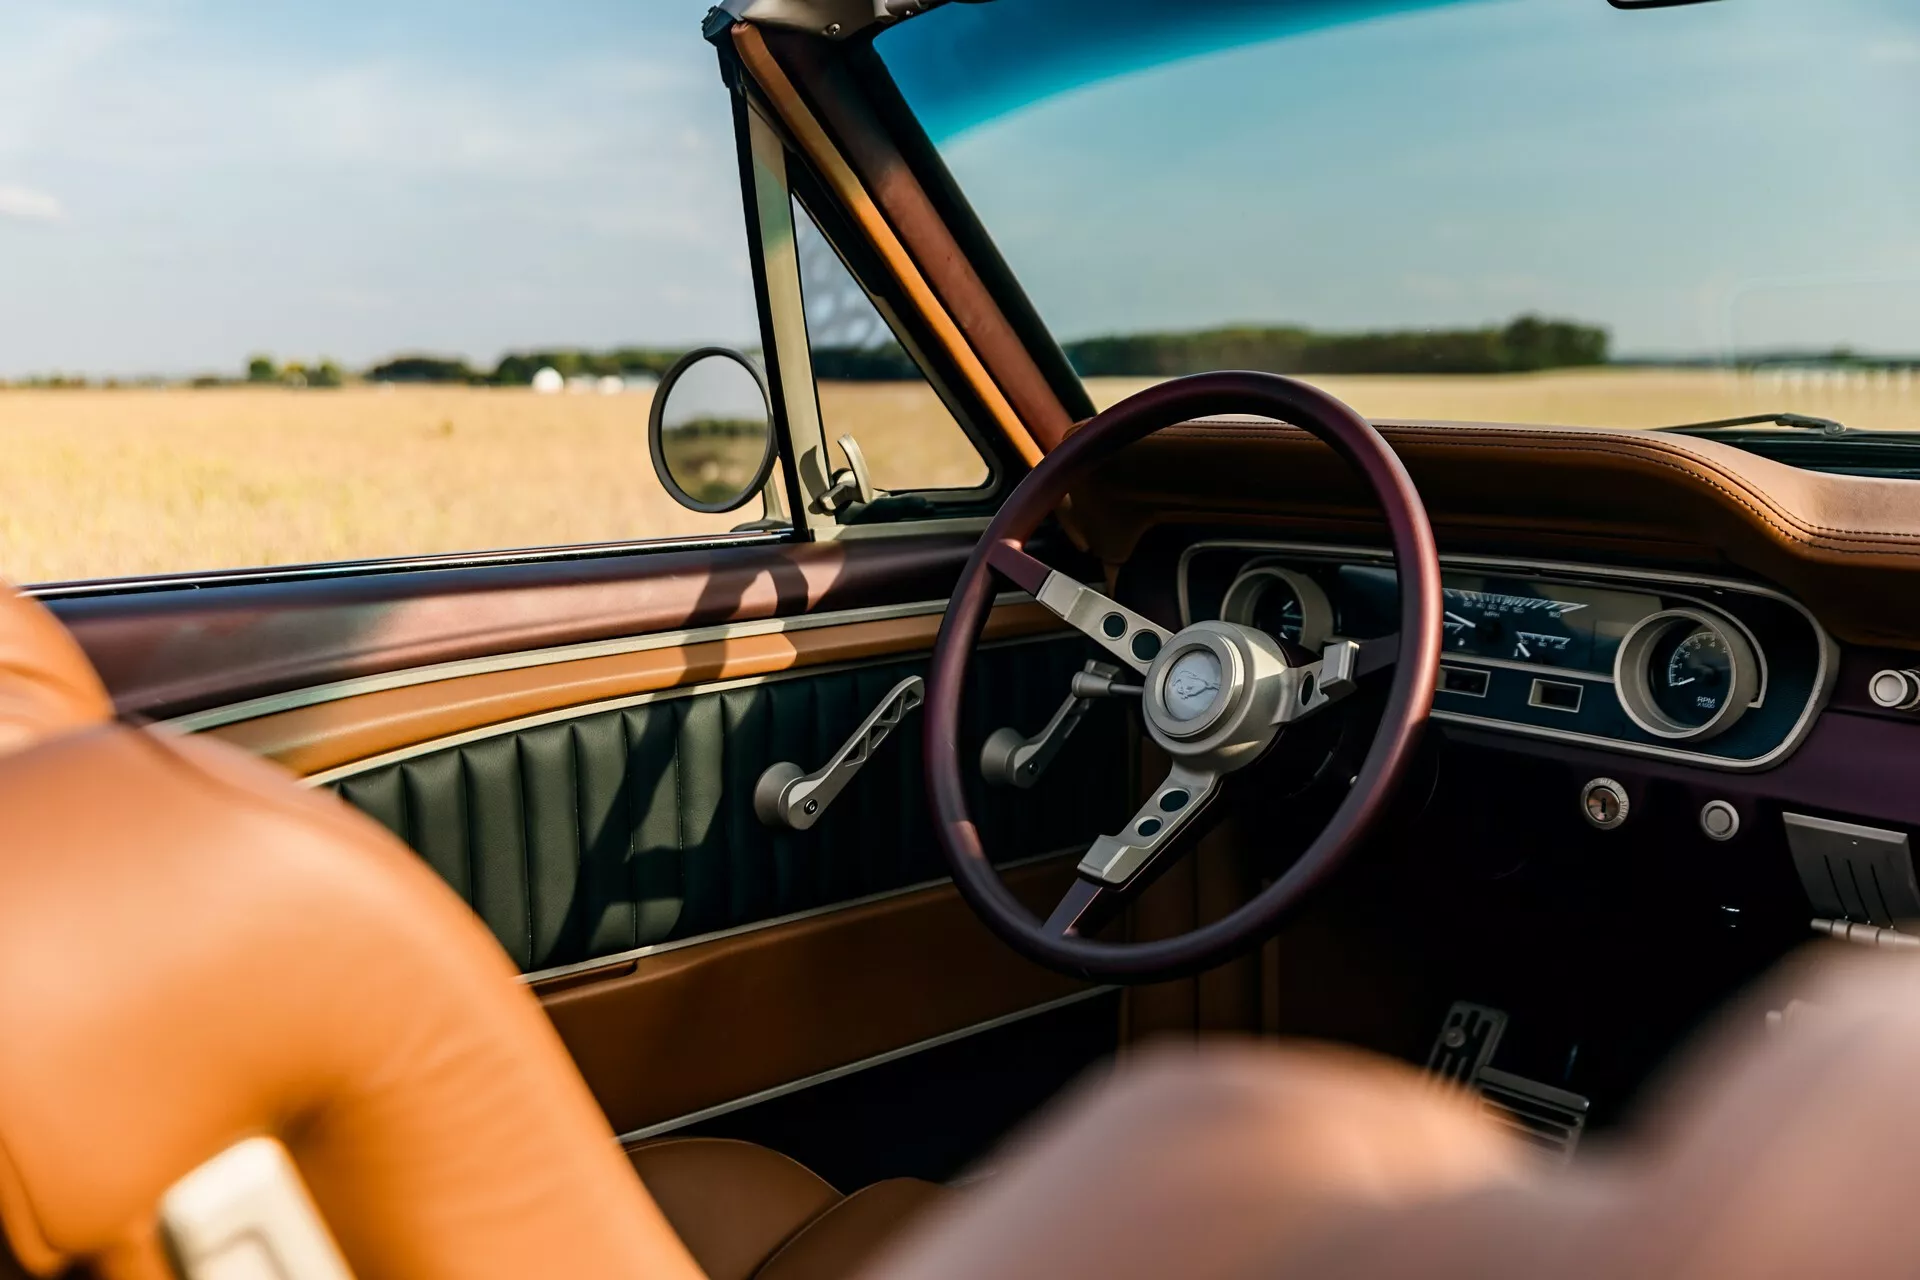 تدشين واحدة من أجمل سيارات فورد موستنج الكلاسيكية في معرض سيما الأمريكي بمحرك 8 سلندر عصري 27